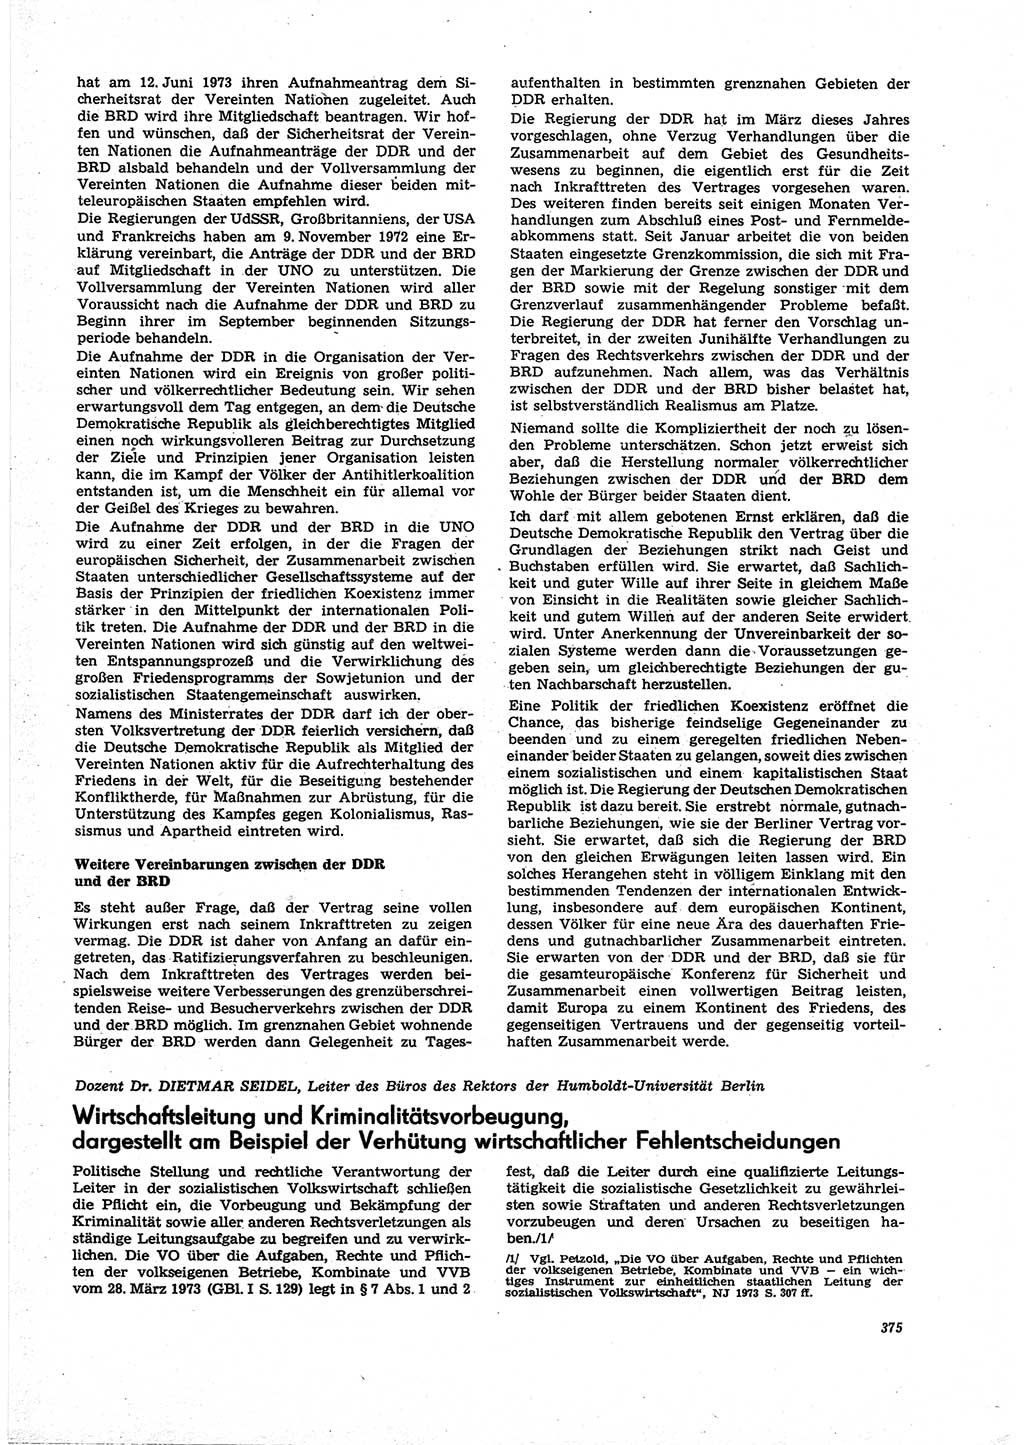 Neue Justiz (NJ), Zeitschrift für Recht und Rechtswissenschaft [Deutsche Demokratische Republik (DDR)], 27. Jahrgang 1973, Seite 375 (NJ DDR 1973, S. 375)